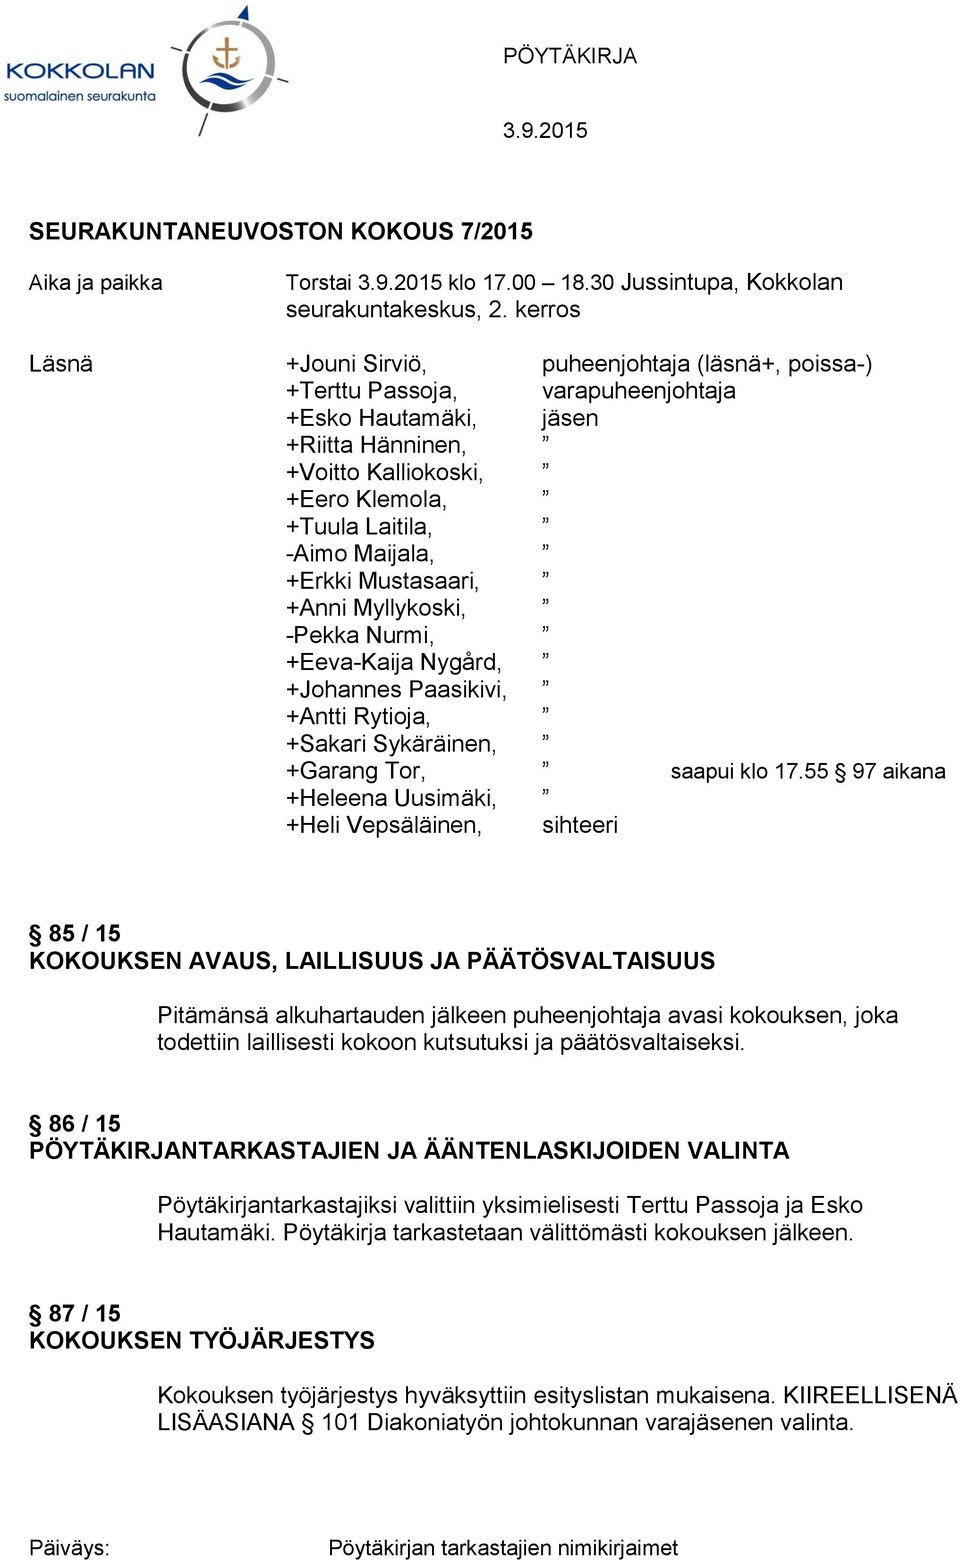 Maijala, +Erkki Mustasaari, +Anni Myllykoski, -Pekka Nurmi, +Eeva-Kaija Nygård, +Johannes Paasikivi, +Antti Rytioja, +Sakari Sykäräinen, +Garang Tor, saapui klo 17.